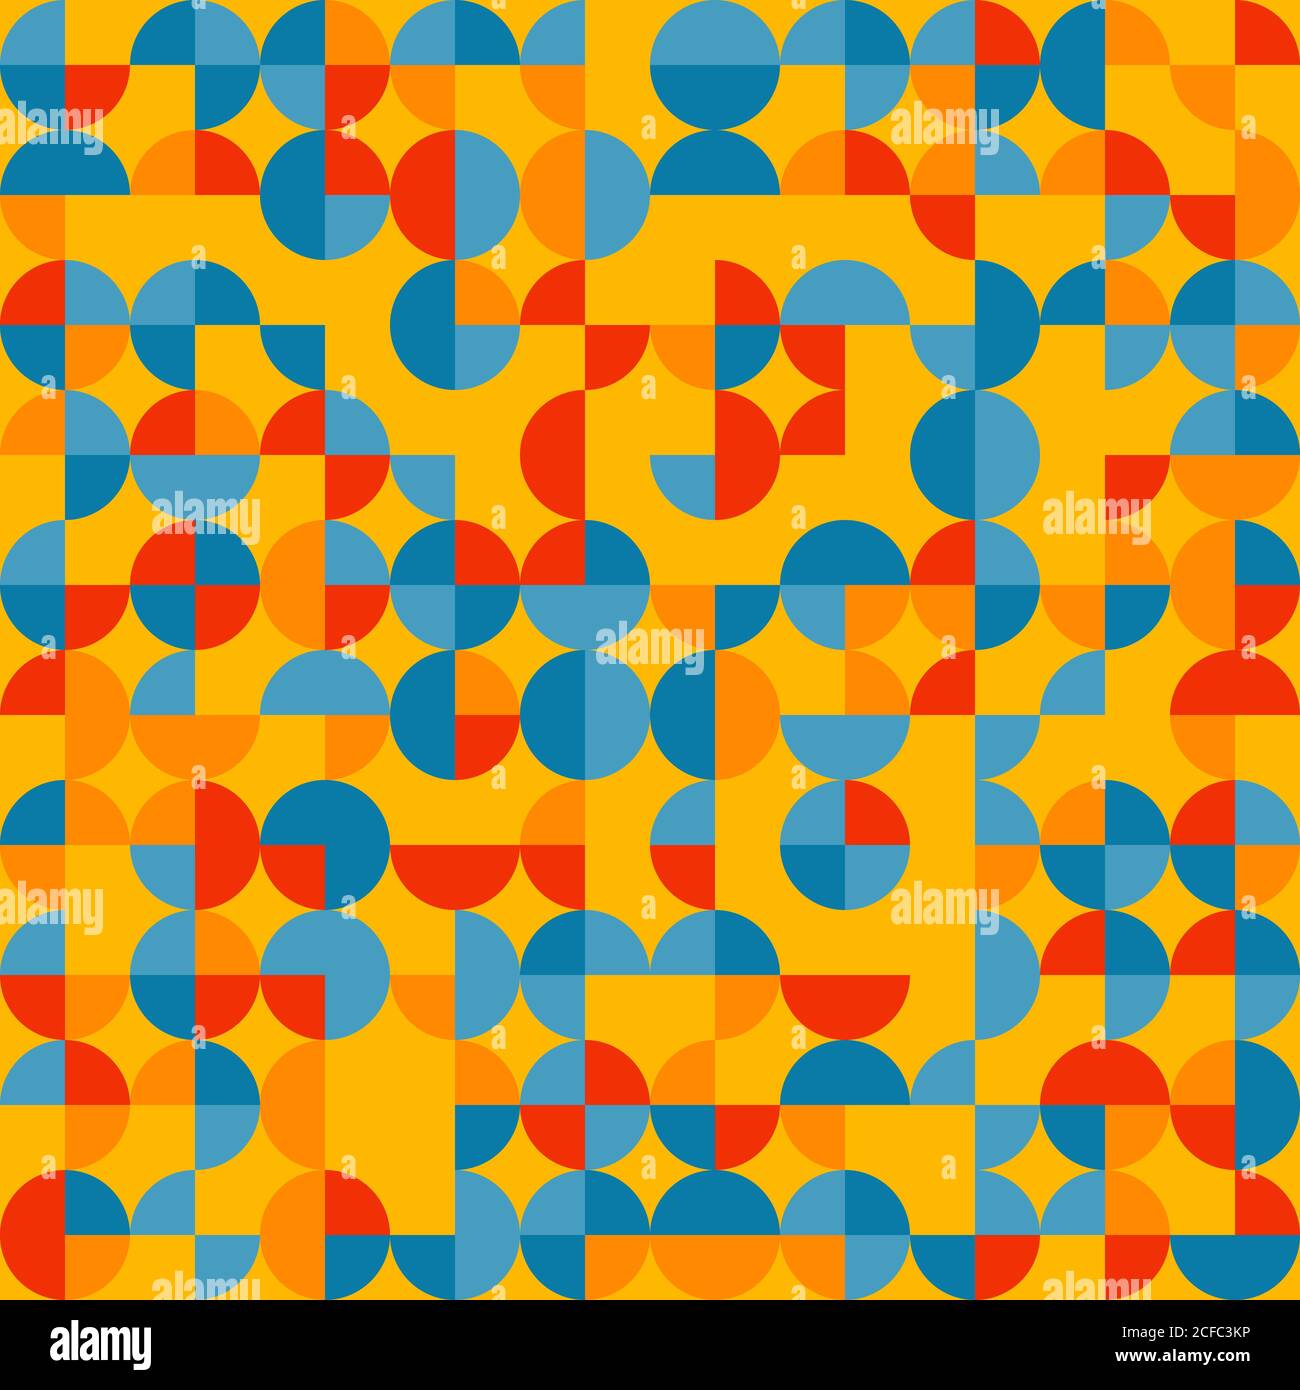 Schema geometrico astratto con cerchi fratturati. Campioni colorati casuali. Sfondo vettoriale senza giunture. Solo cinque colori - facile da colorare. Illustrazione Vettoriale